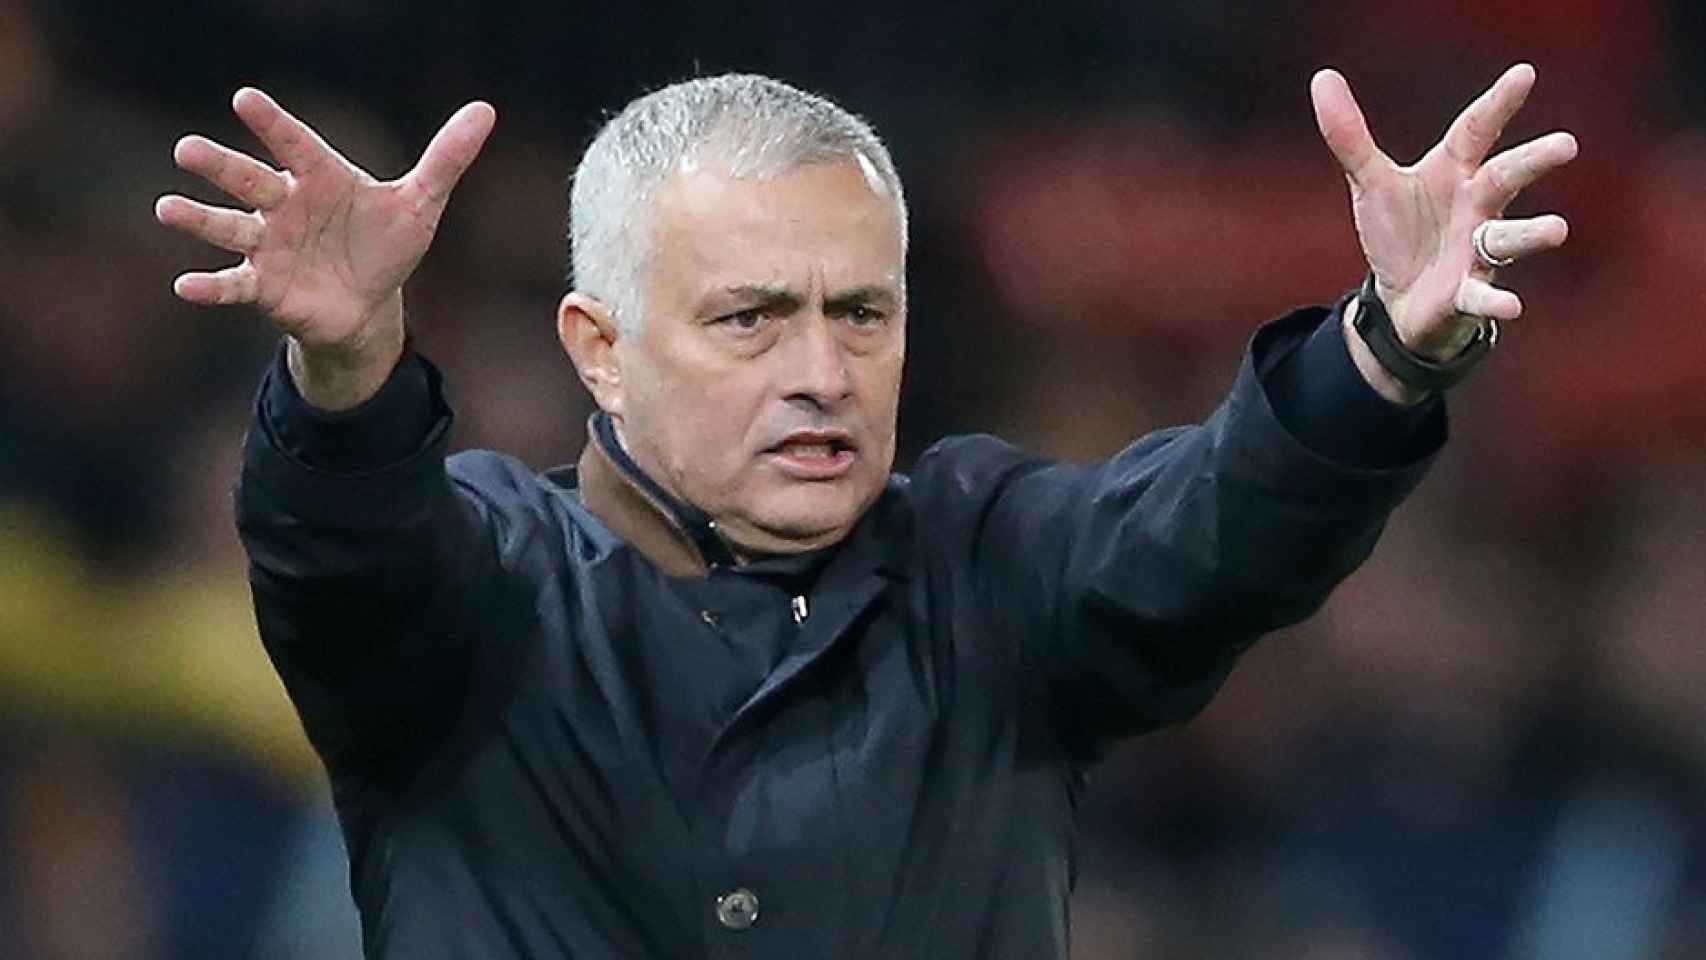 El técnico José Mourinho, desesperado en un partido de fútbol / EFE